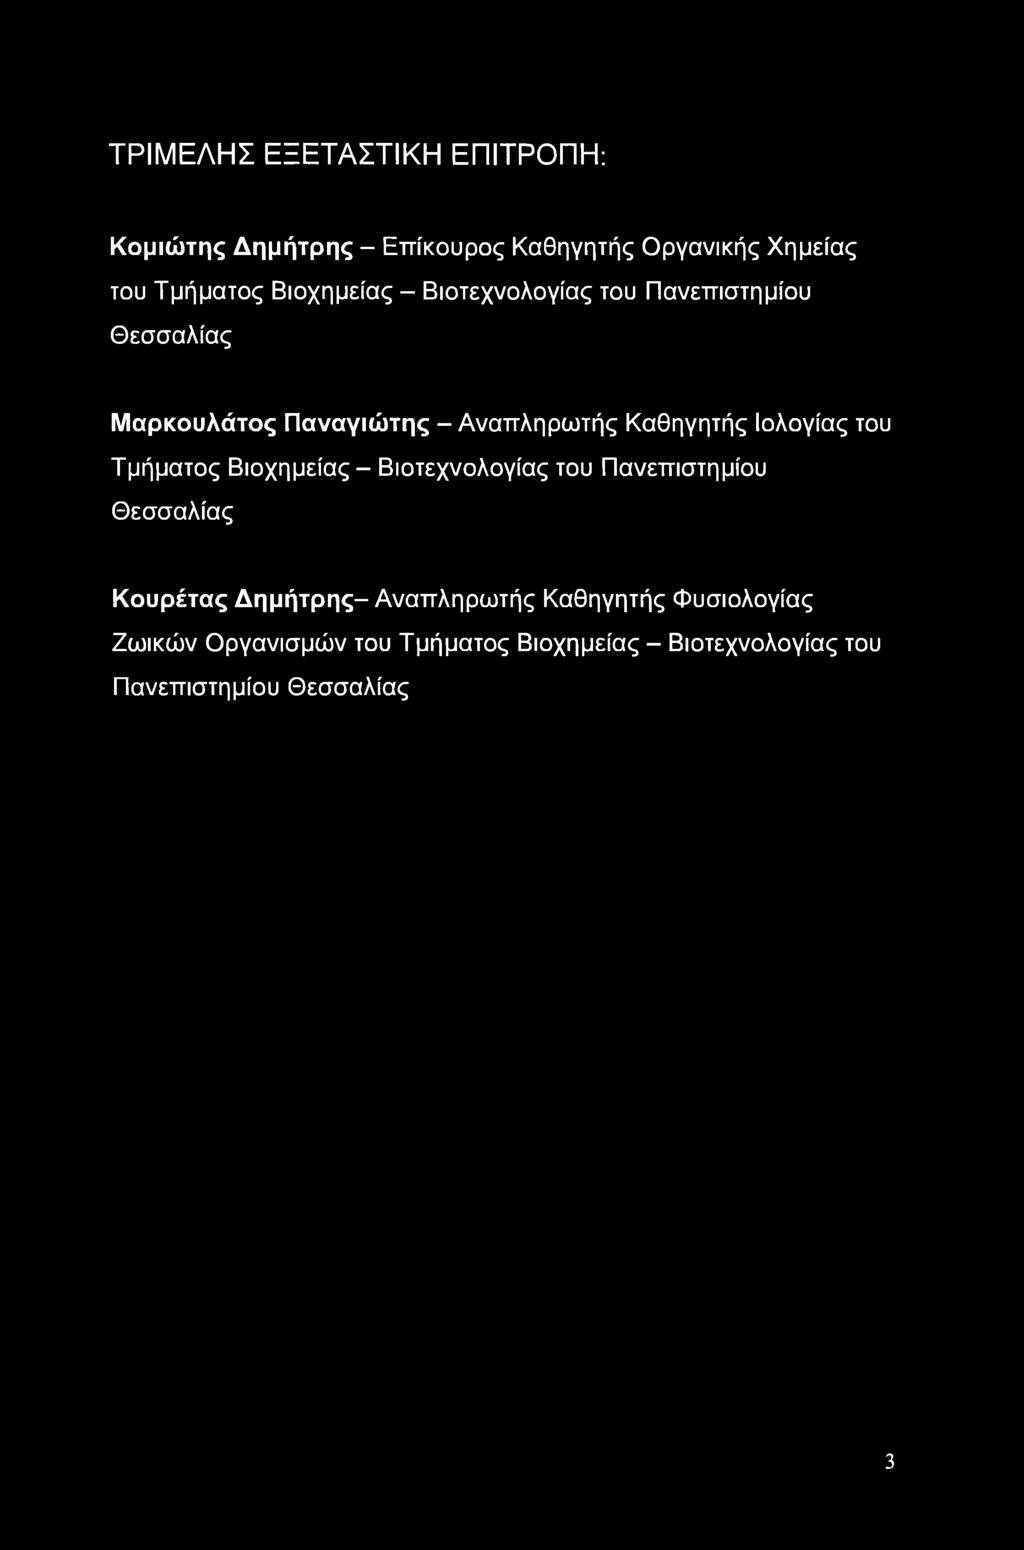 Ιολογίας του Τμήματος Βιοχημείας - Βιοτεχνολογίας του Πανεπιστημίου Θεσσαλίας Κουρέτας Δημήτρης-